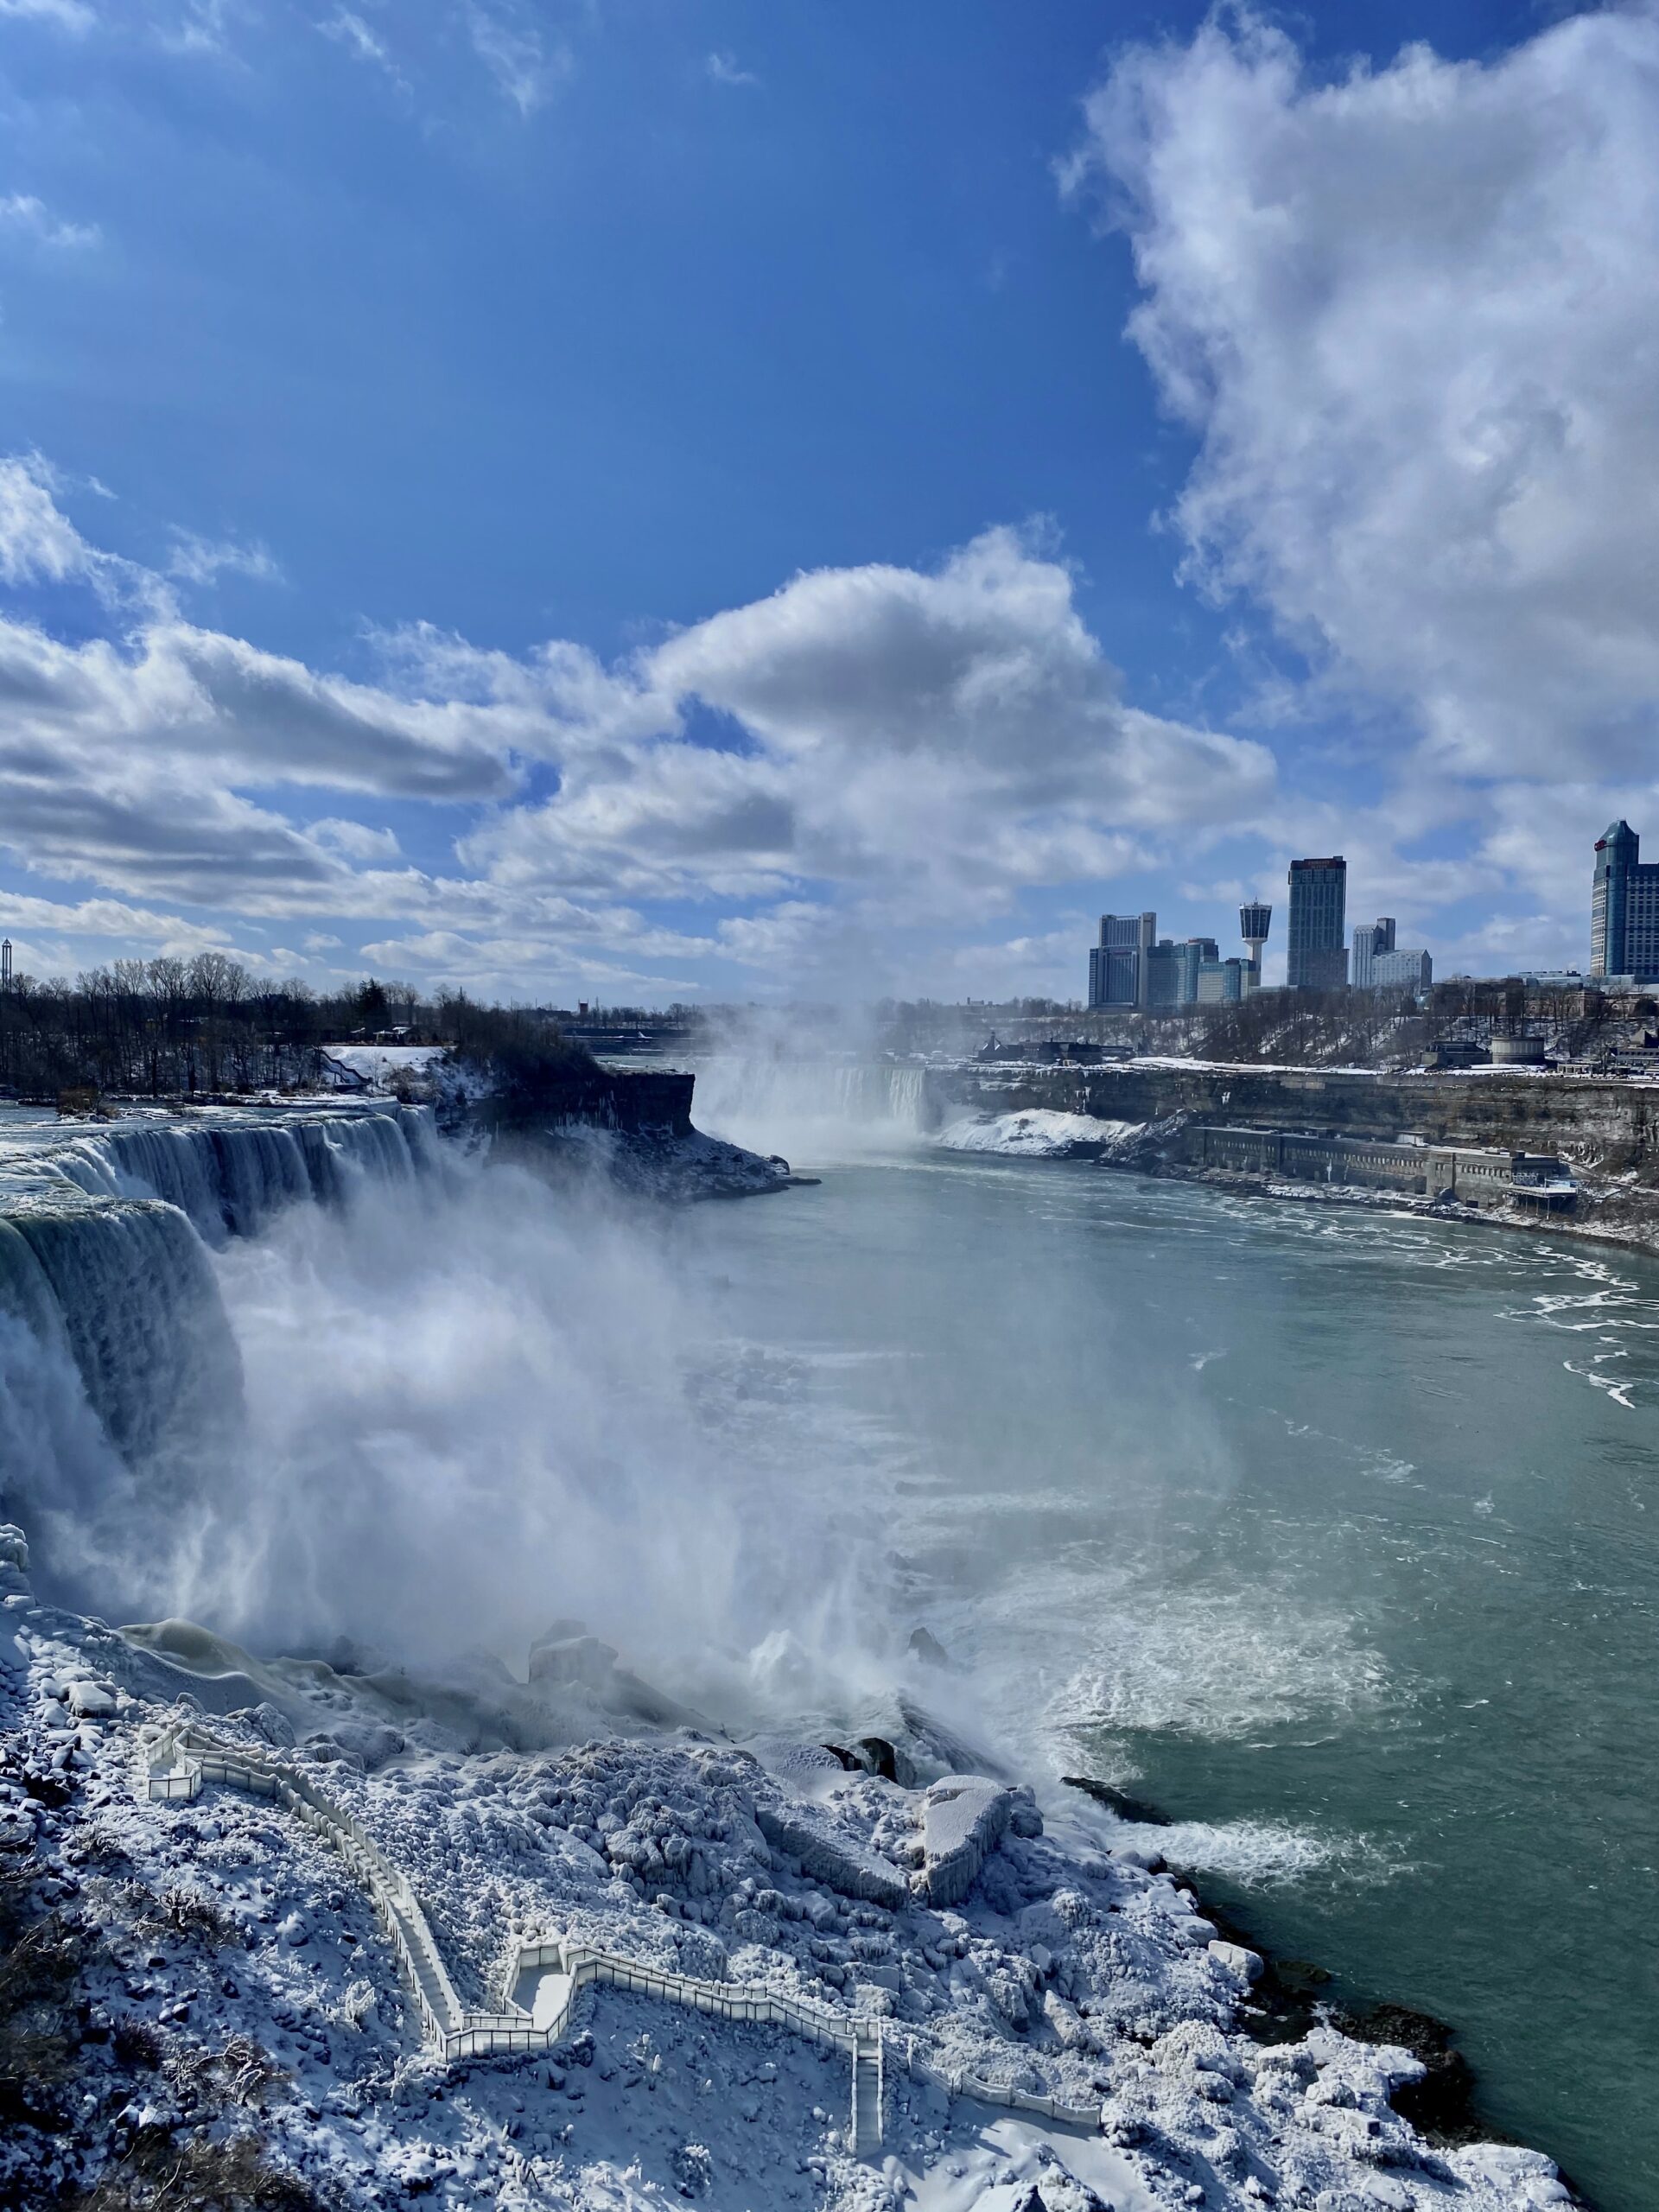 Niagara Falls, New York and Ontario, Canada